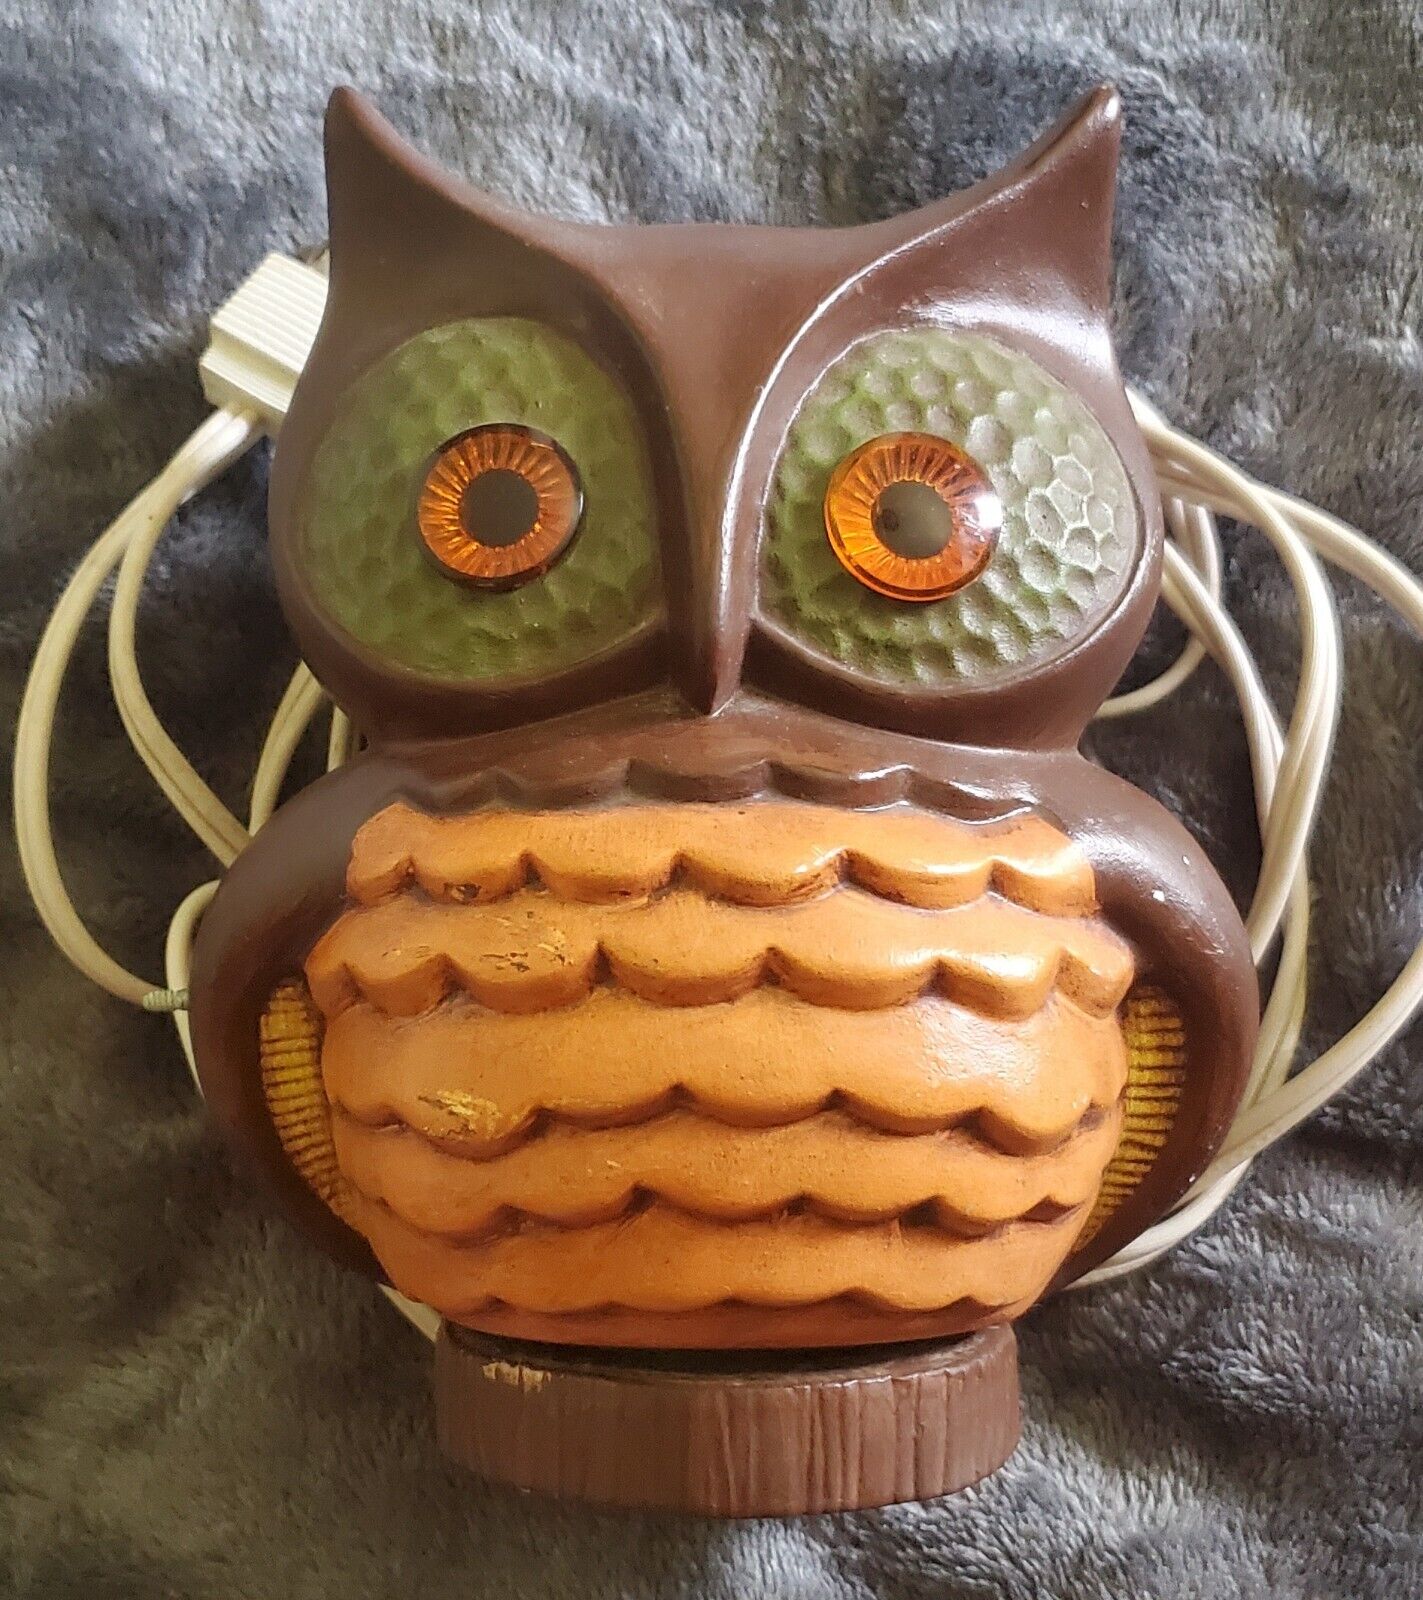 Adorable hobbyist owl nightlight lamp orange glowing eyes WORKS